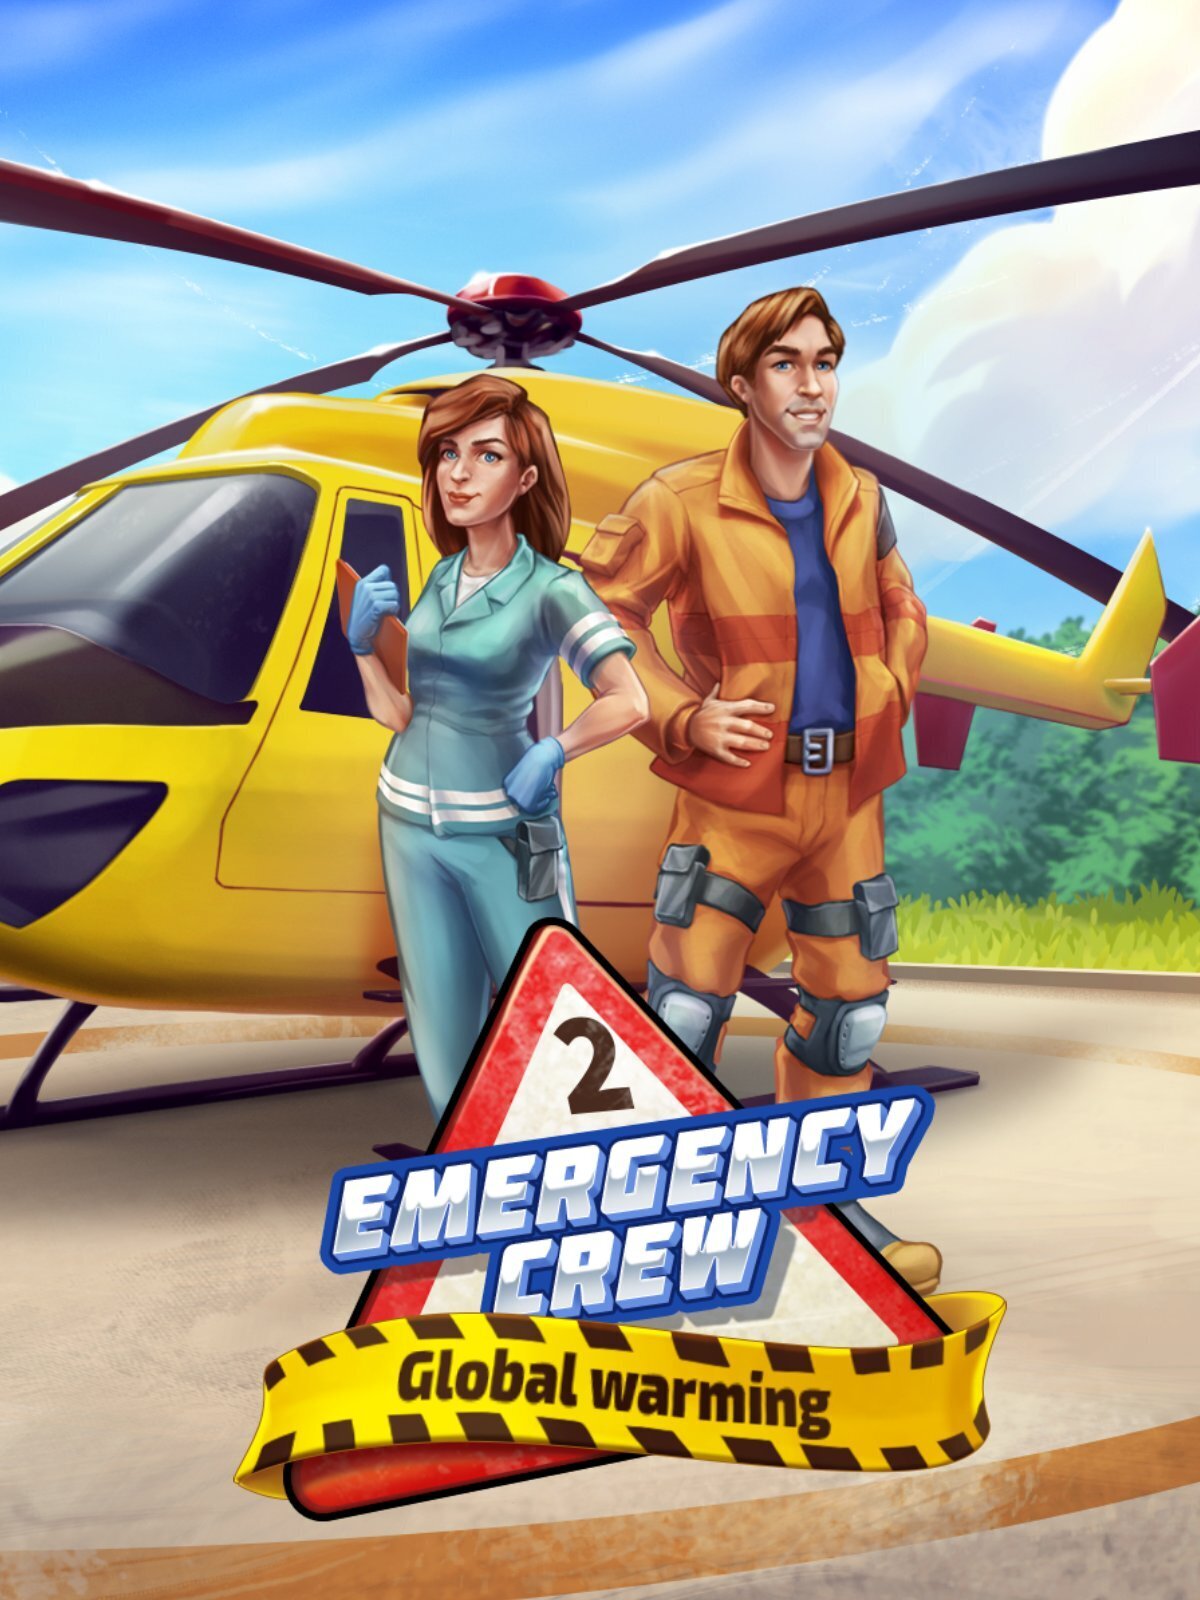 Emergency Crew 2: Global Warming - Metacritic